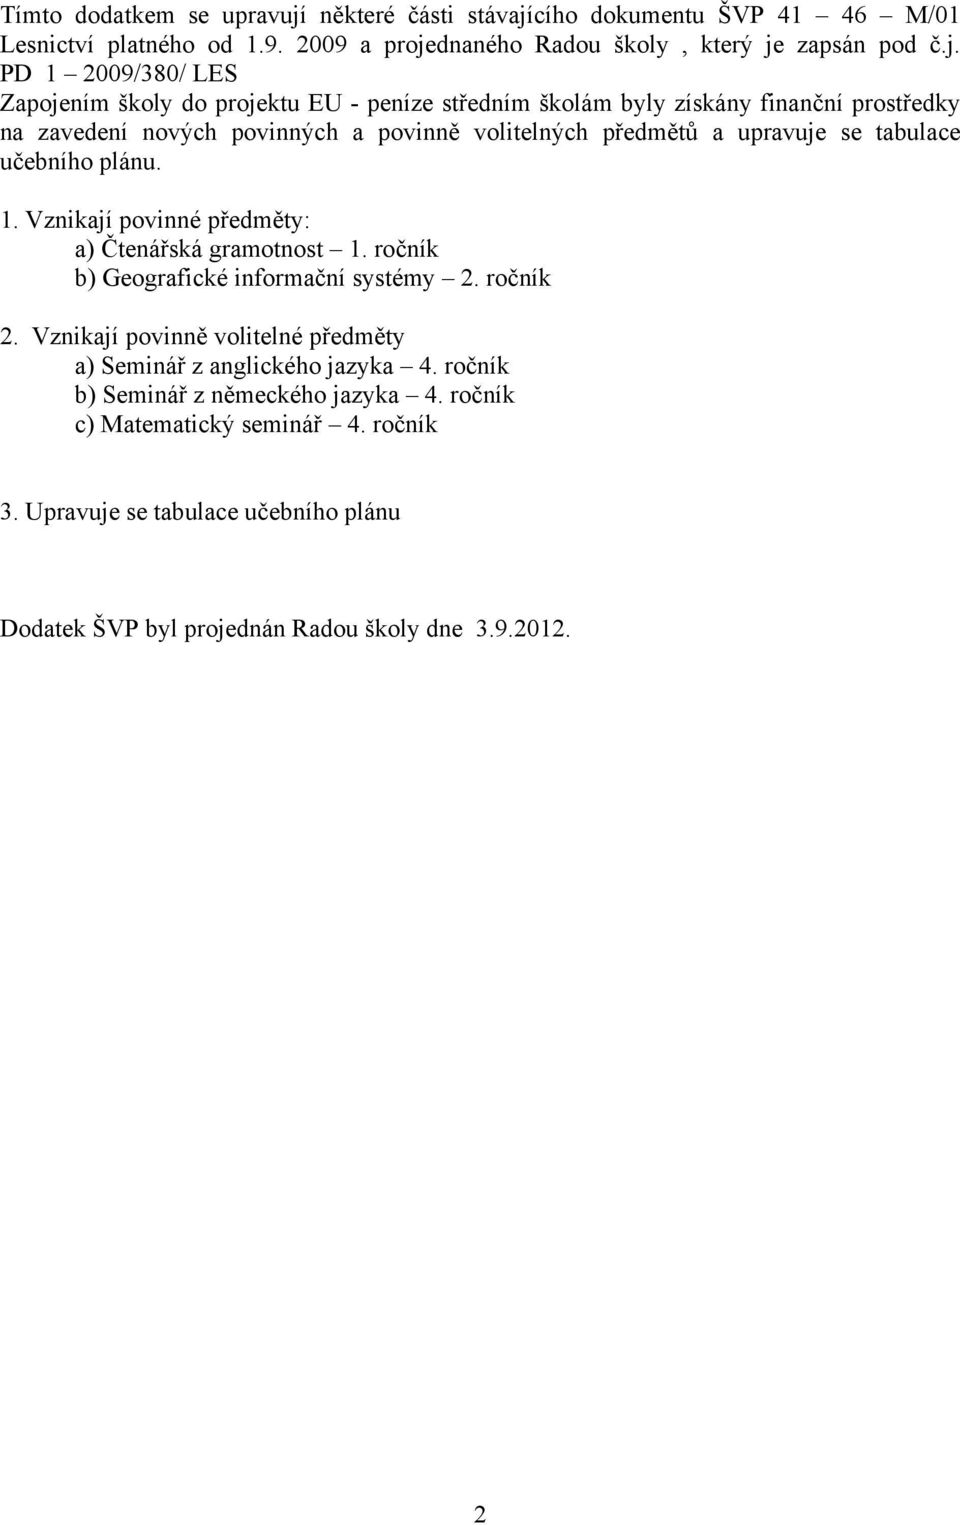 cího dokumentu ŠVP 41 46 M/01 Lesnictví platného od 1.9. 2009 a proje